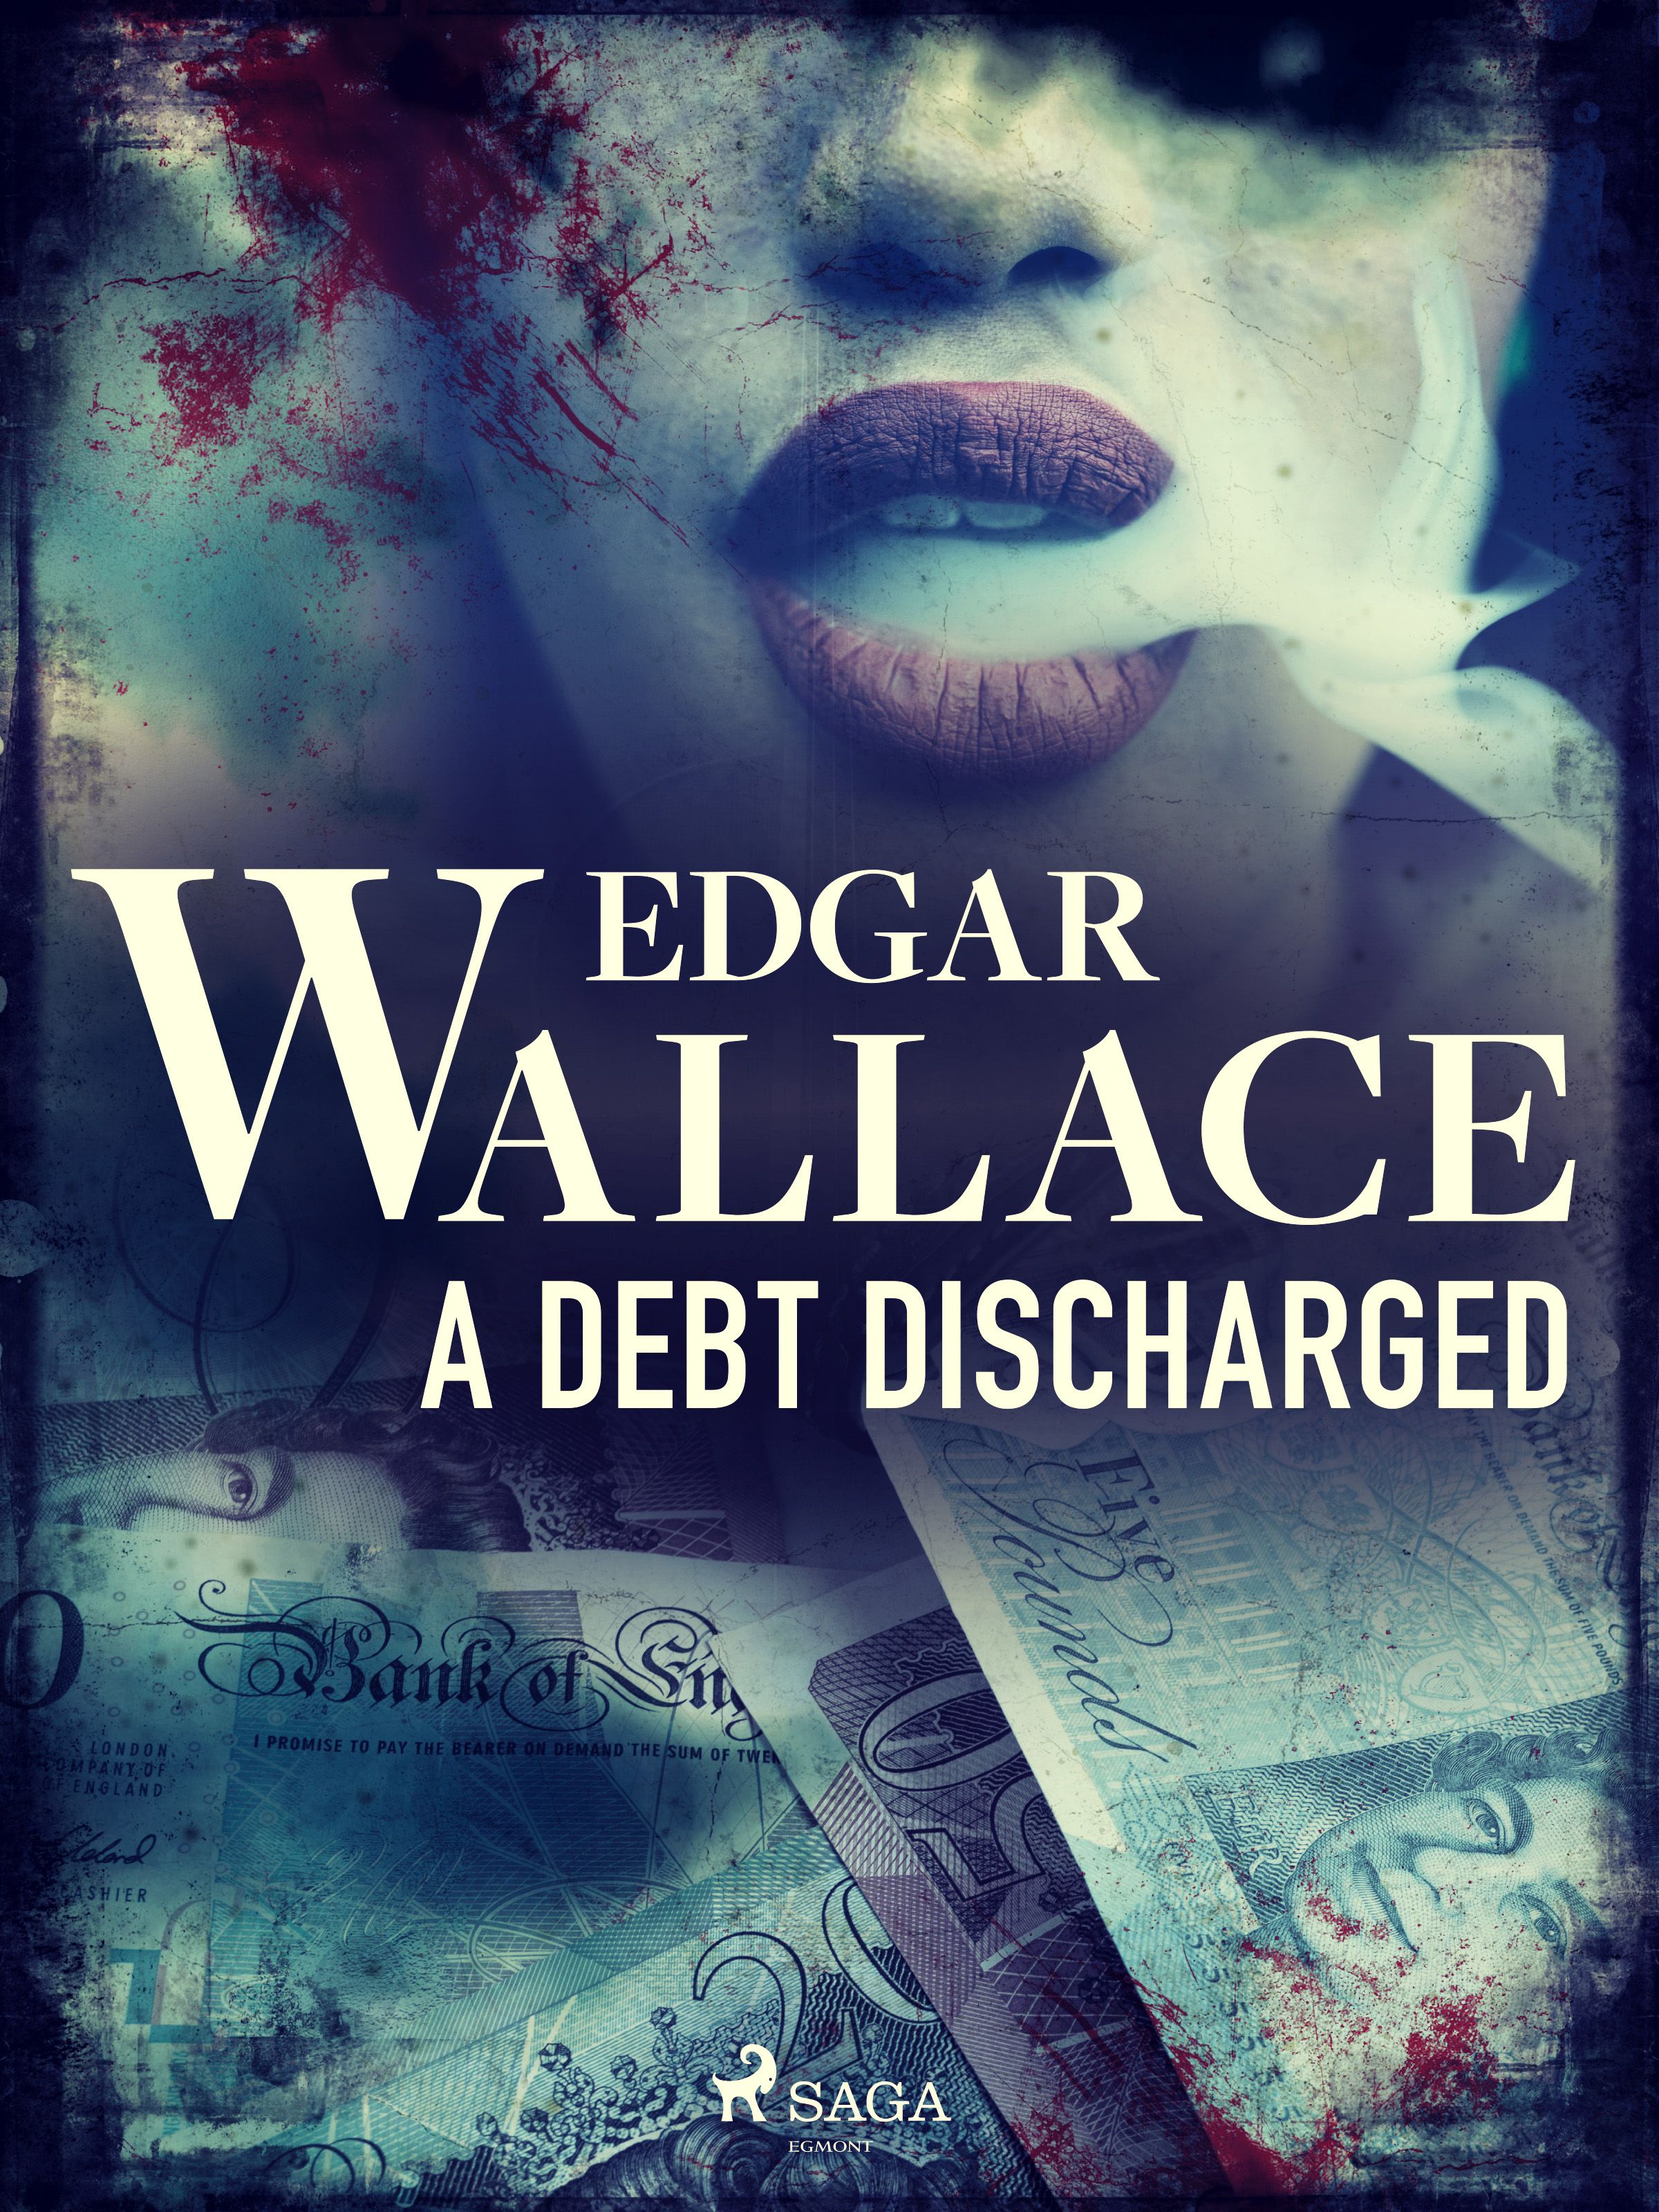 A Debt Discharged, eBook by Edgar Wallace